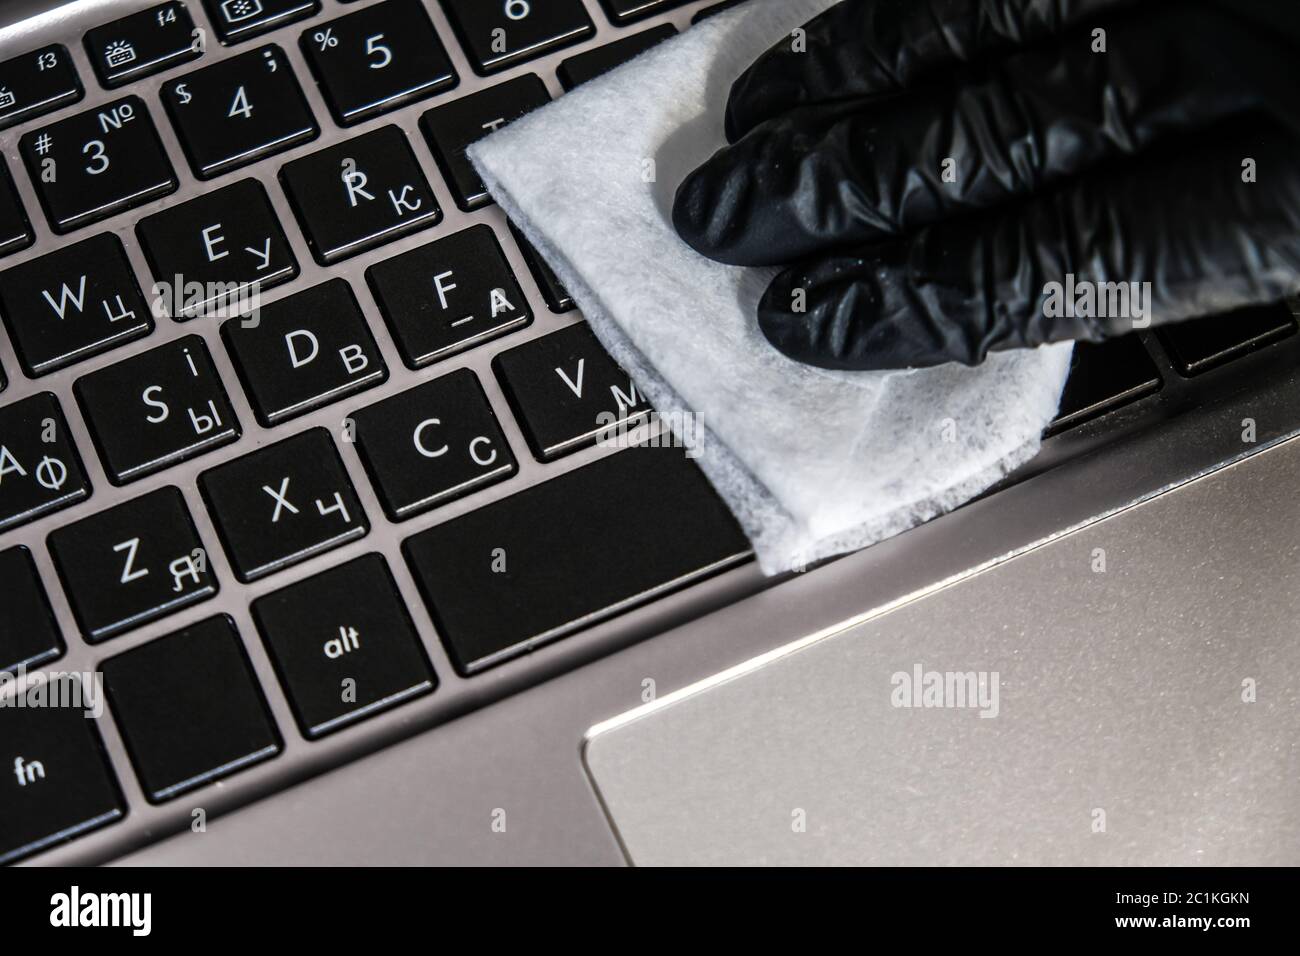 Nettoyage du clavier de l'ordinateur portable avec des lingettes humides antibactériennes. Gant noir et serviette blanche sur un ordinateur noir. Éliminer la poussière et tuer les bactéries Banque D'Images